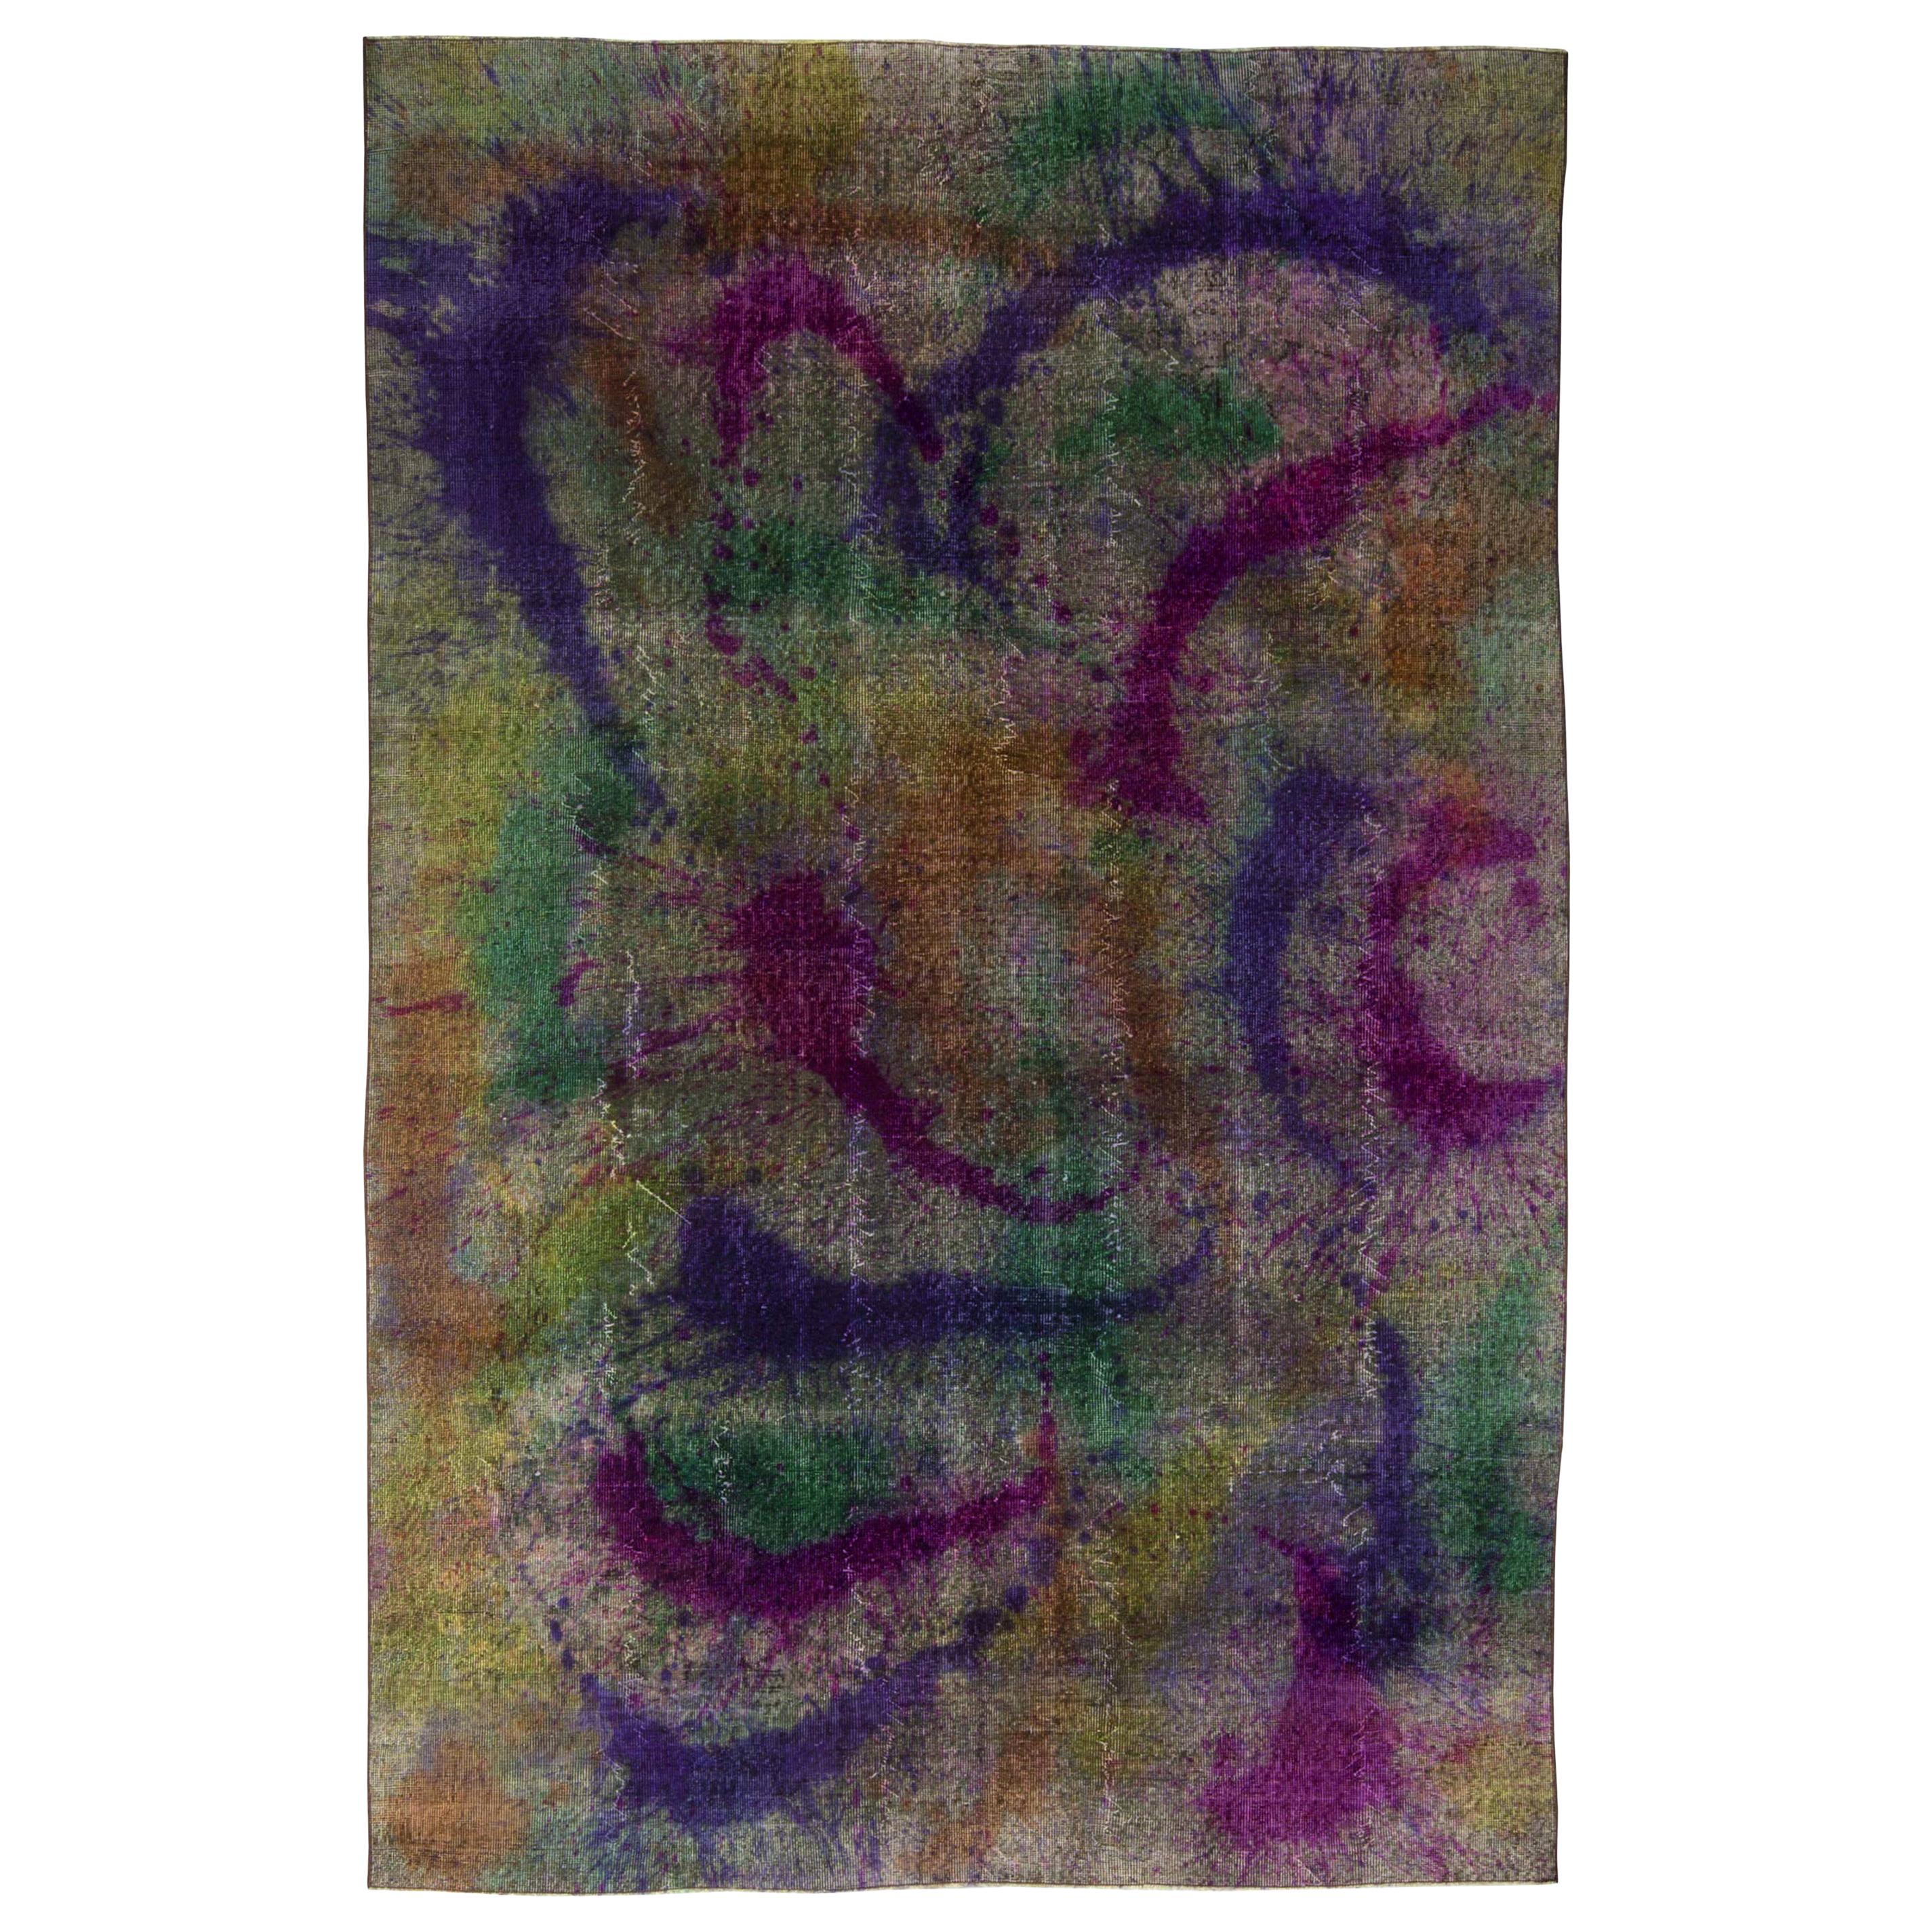 Modern Explosion of Colors Abstract Handmade Wool Rug by Doris Leslie Blau